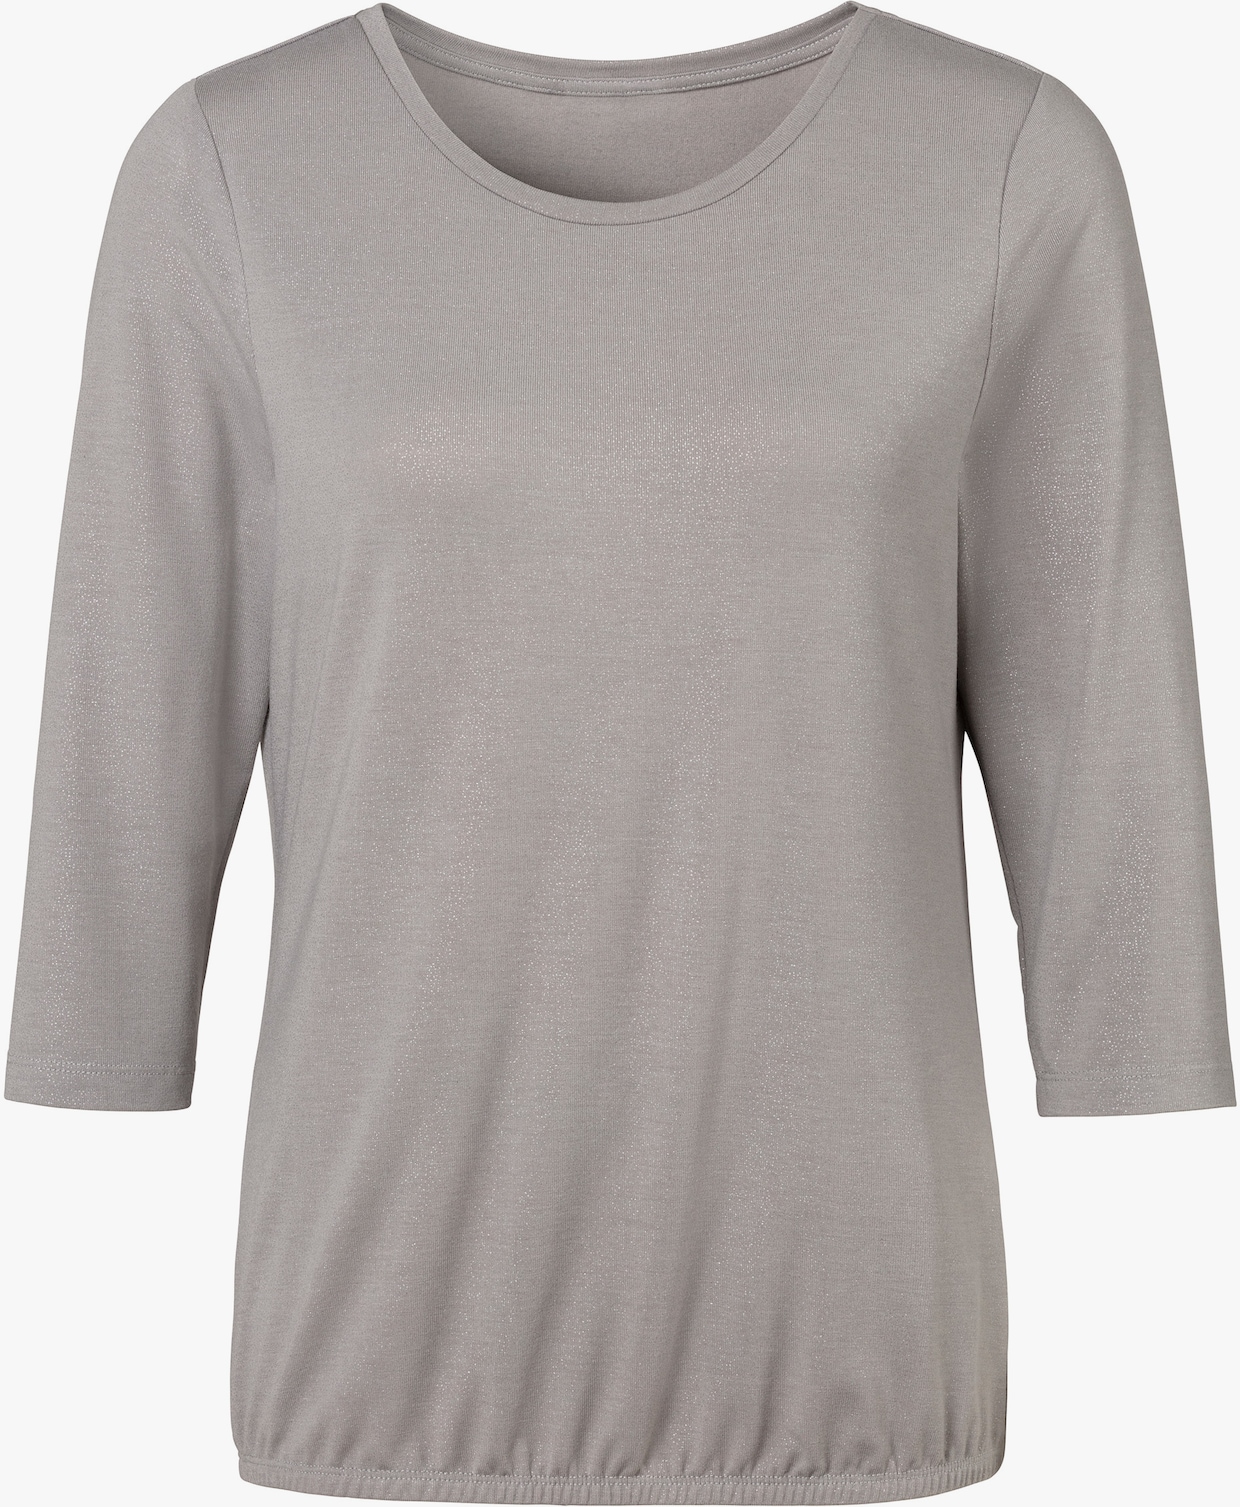 Vivance T-shirt à manches 3/4 - gris